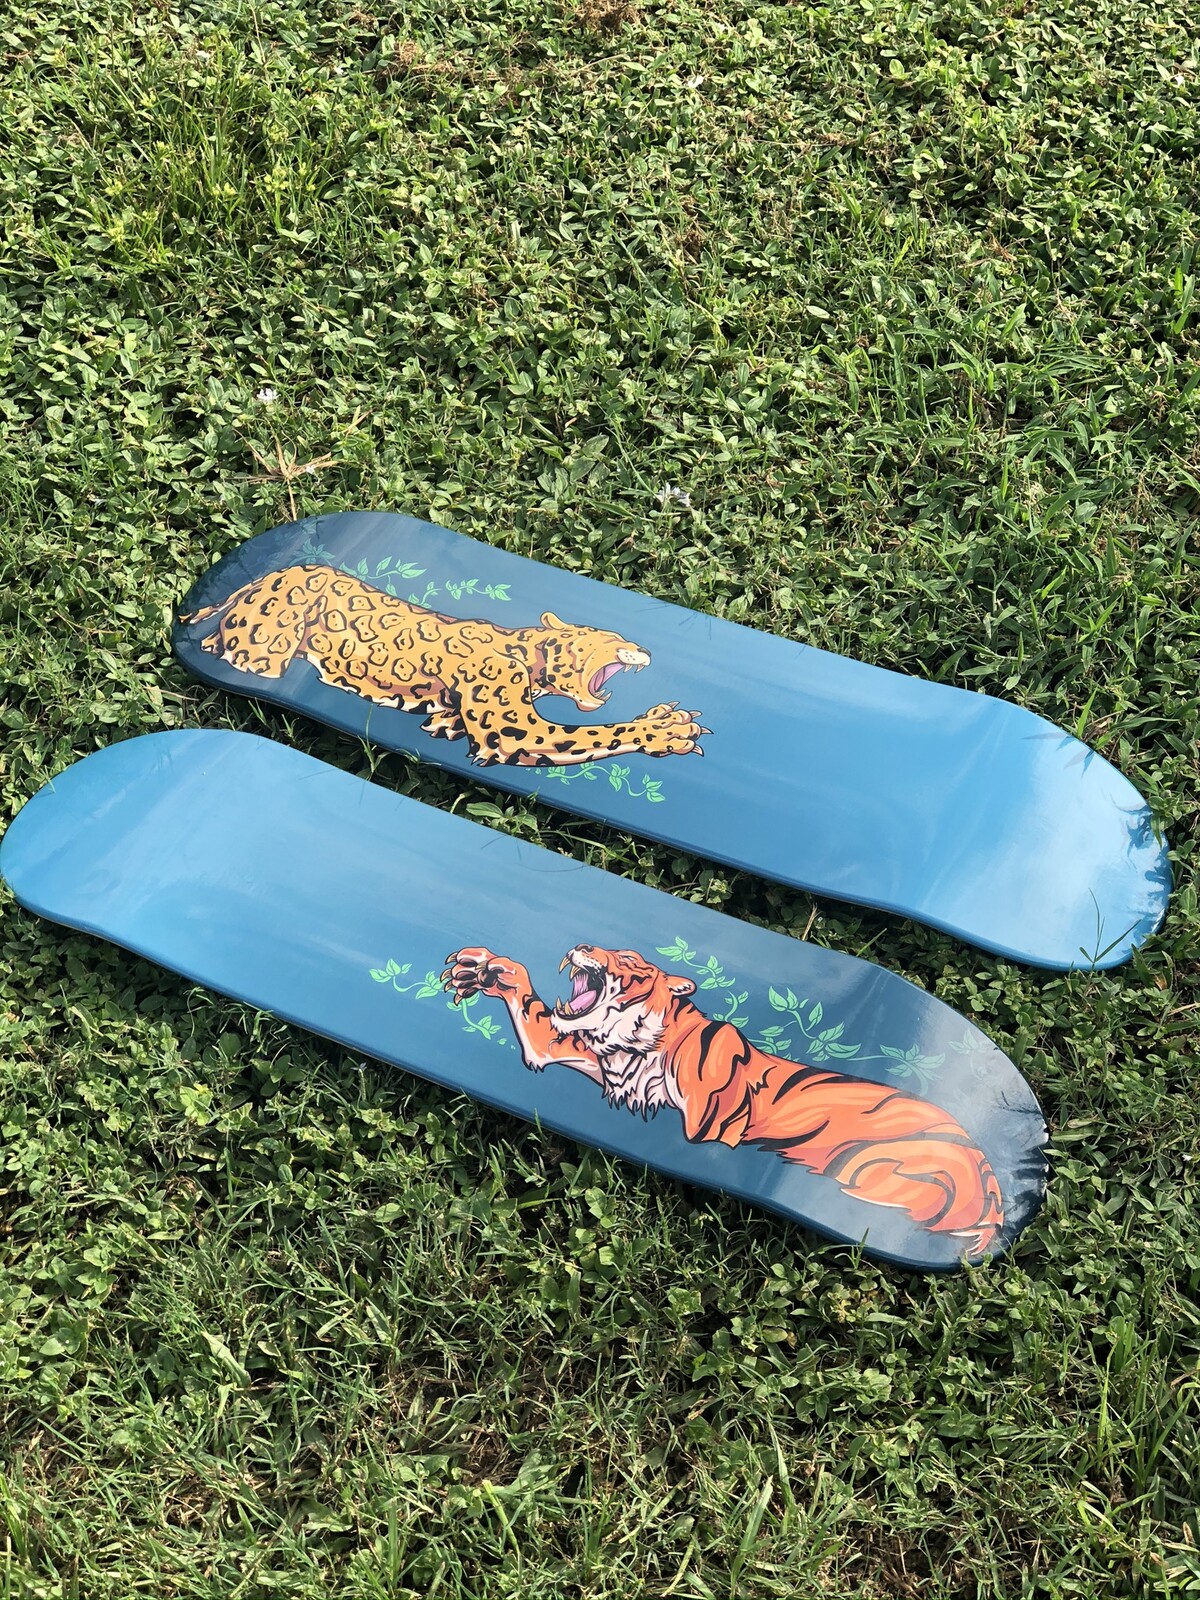 Tiger and Jaguar vinyl wrapped skateboards